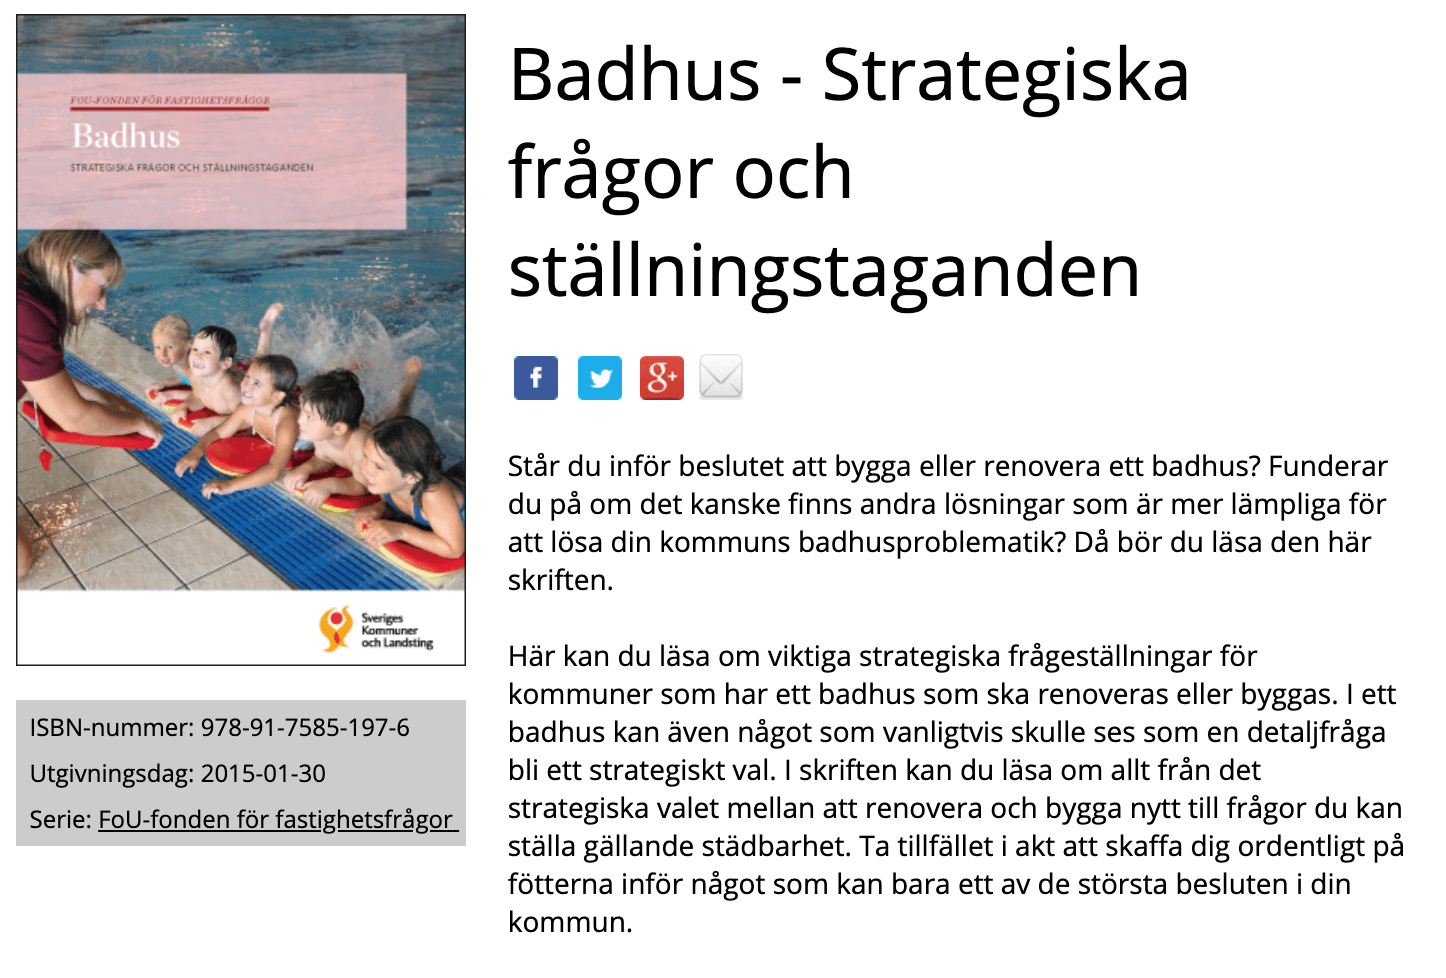 Badhus- Strategiska frågor och ställningstaganden